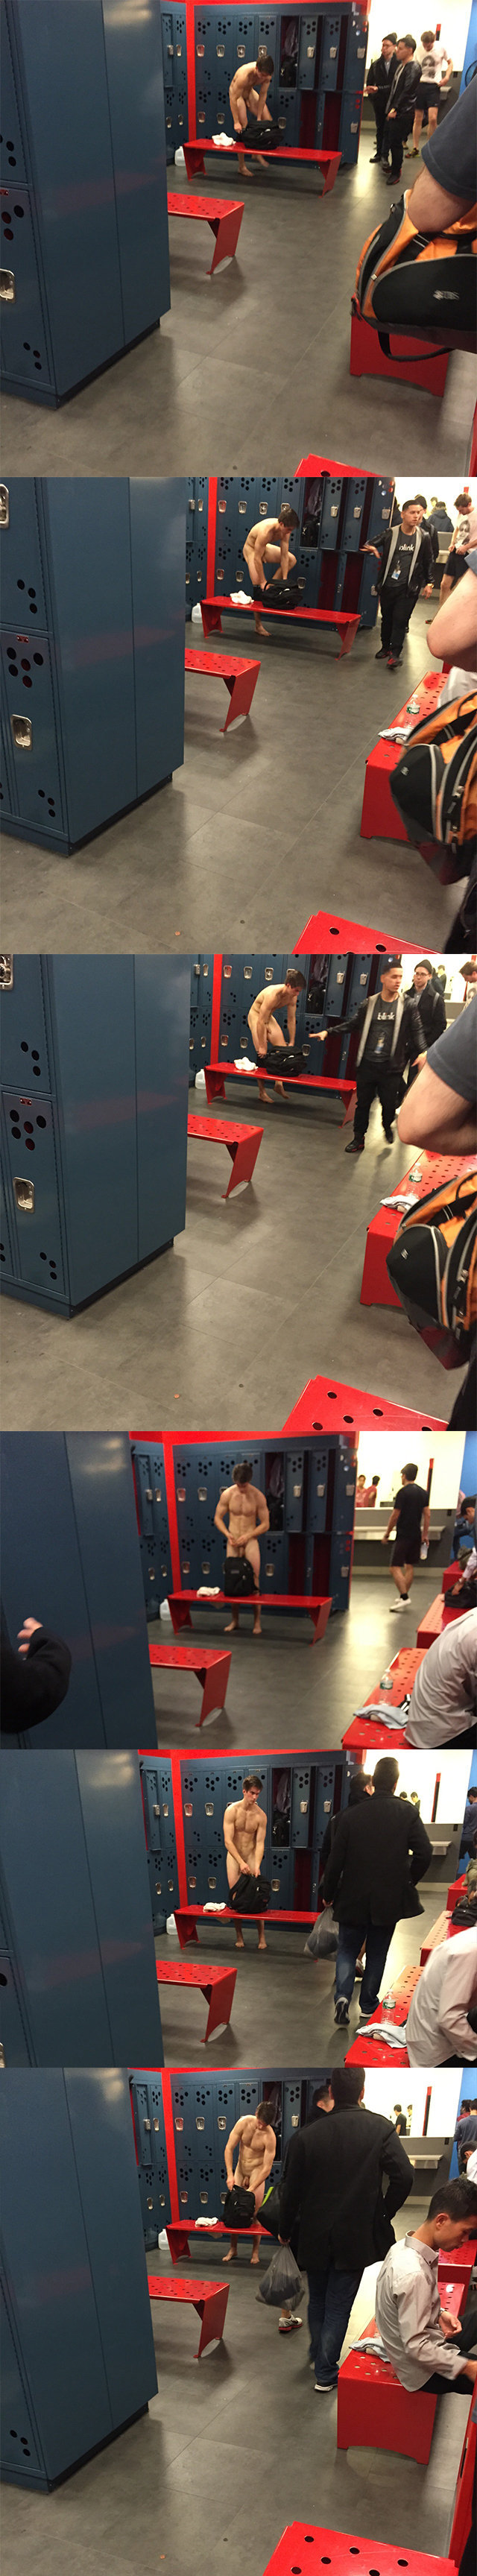 spycam guy naked in locker room